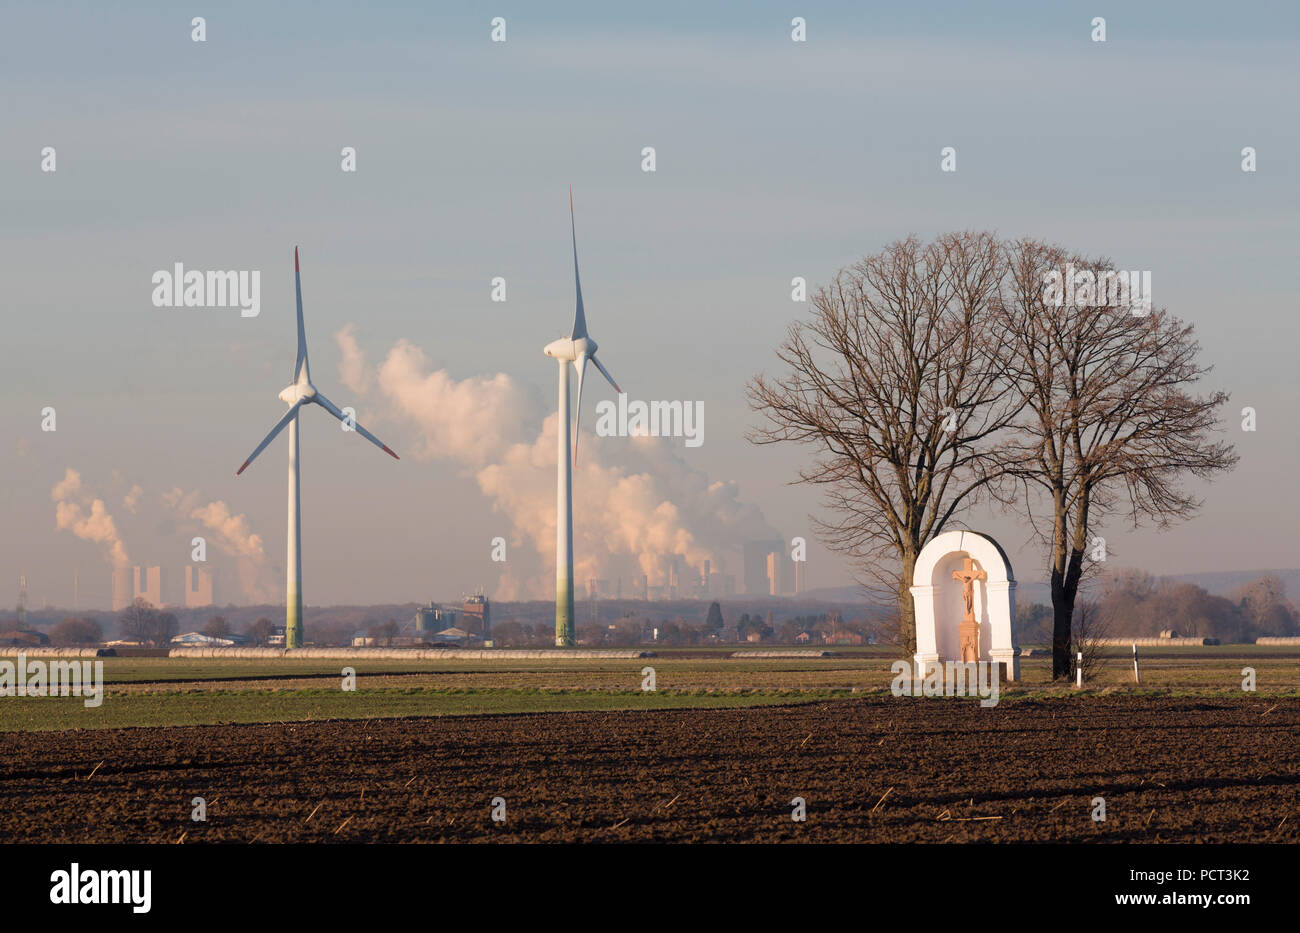 Von zwei Linden flankierter Bildstock aus dem 18. Jahrhundert, dahinter zwei Windkraftanlagen und Kohlekraftwerke (Rheinisches Braunkohlerevier) Foto Stock